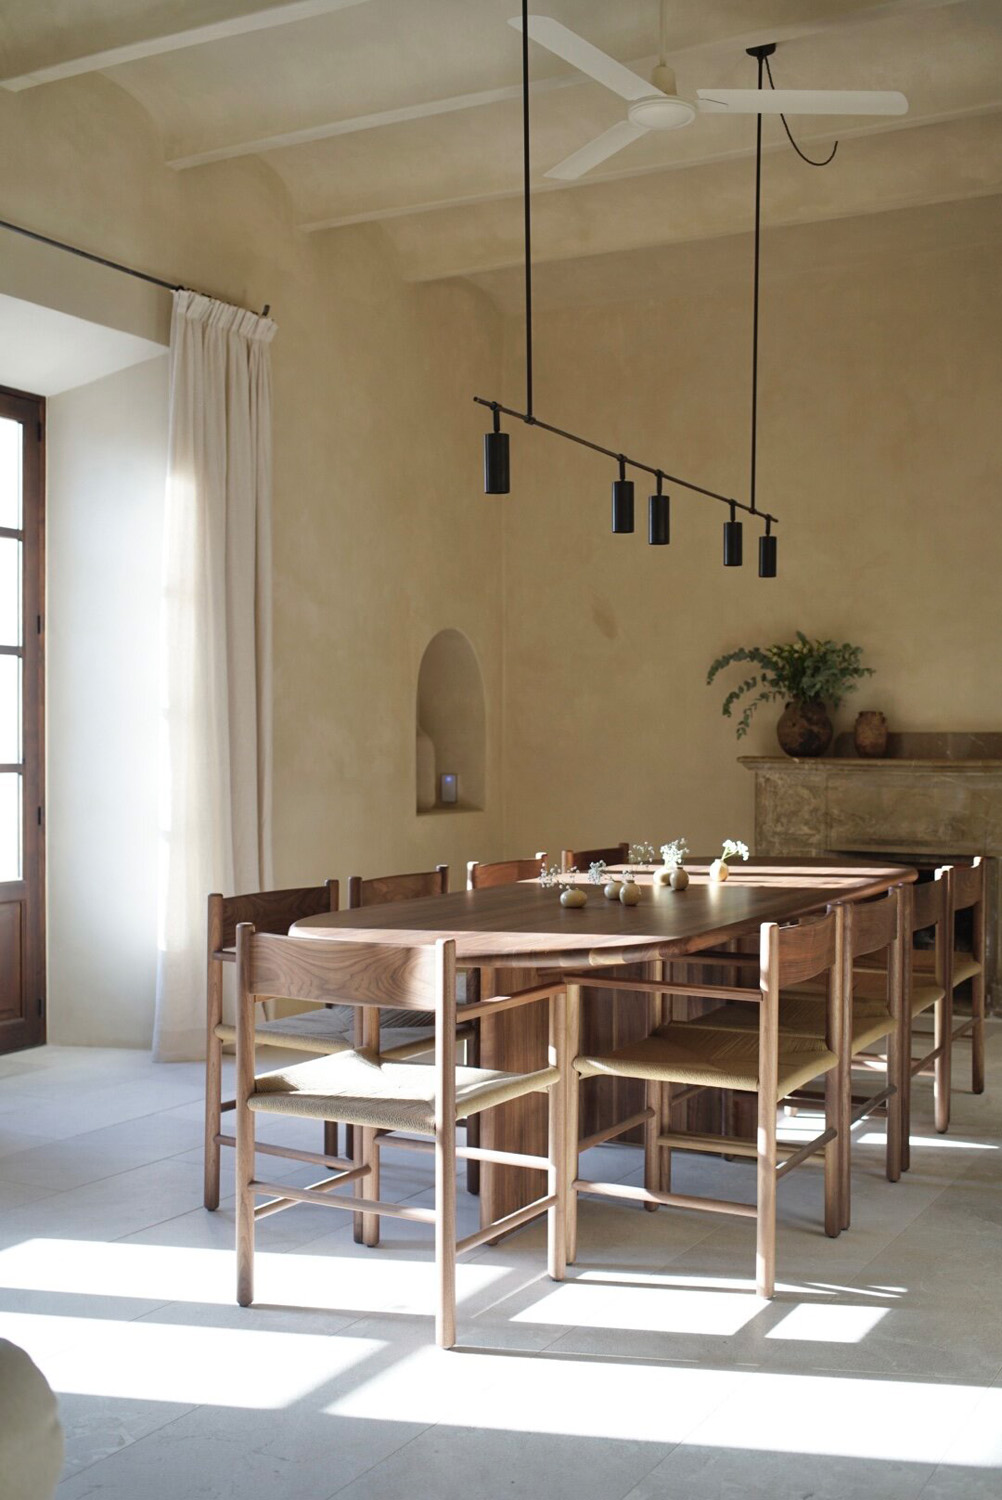 Contemporary kitchen by luxury interior design studio CONTAIN